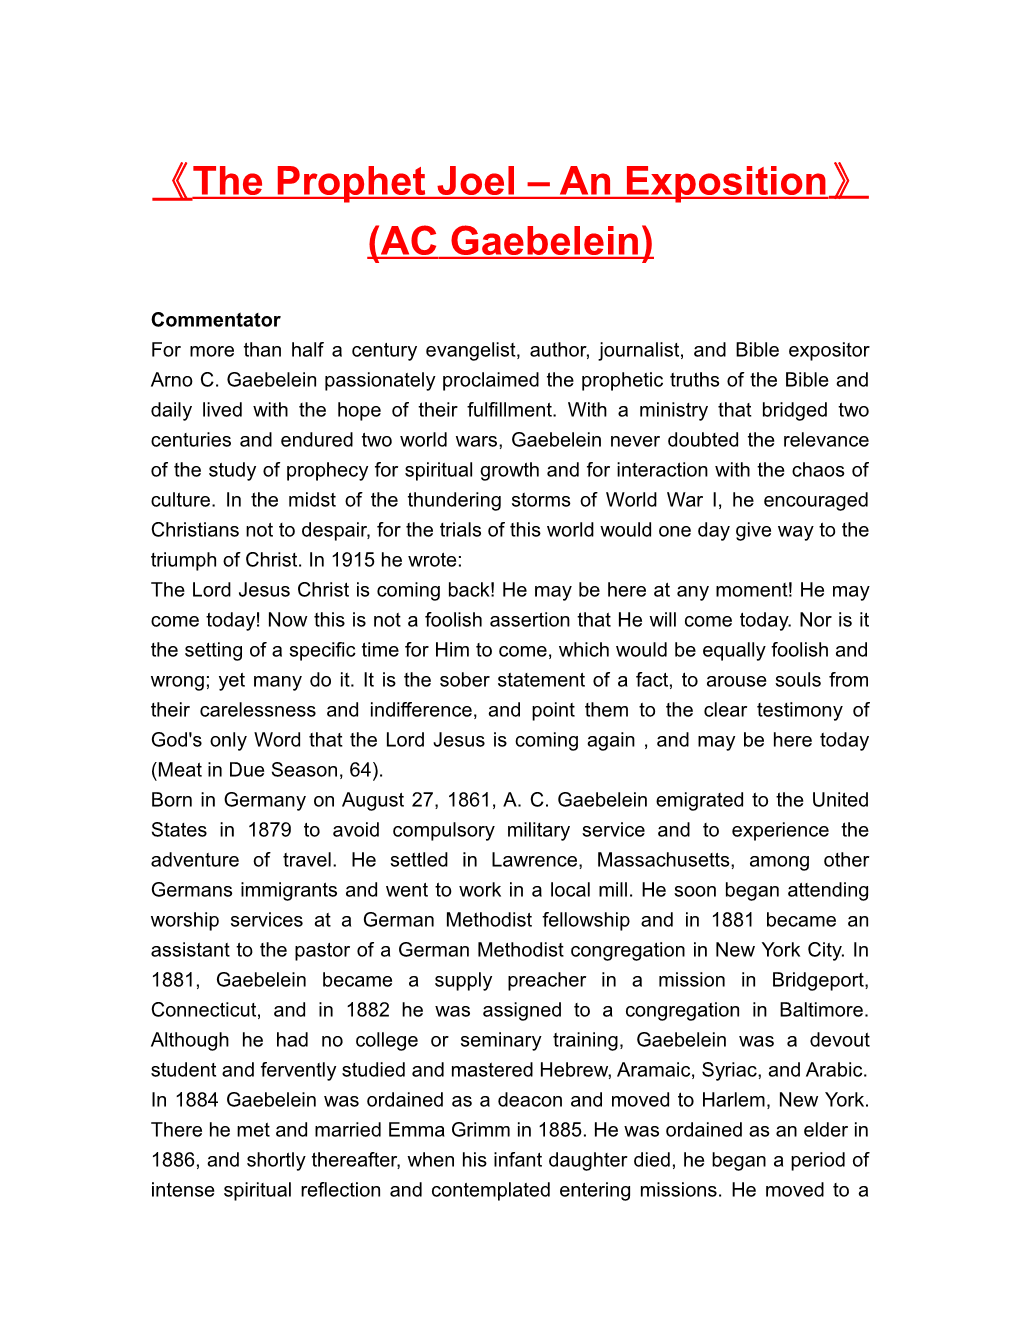 The Prophet Joel an Exposition (AC Gaebelein)